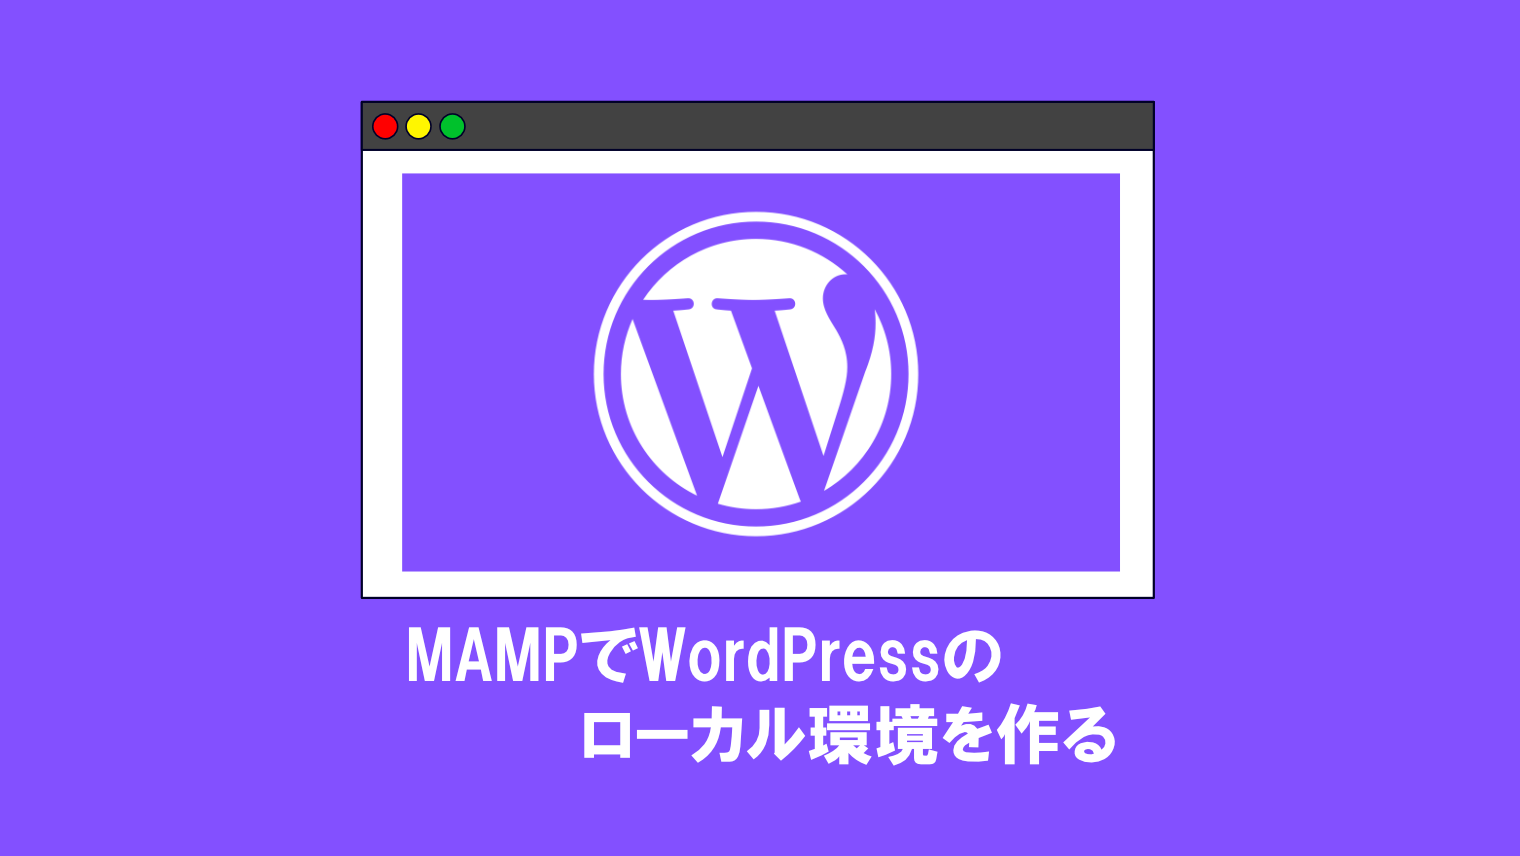 MAMPでWordPressローカル環境を構築する方法【誰でもできる】